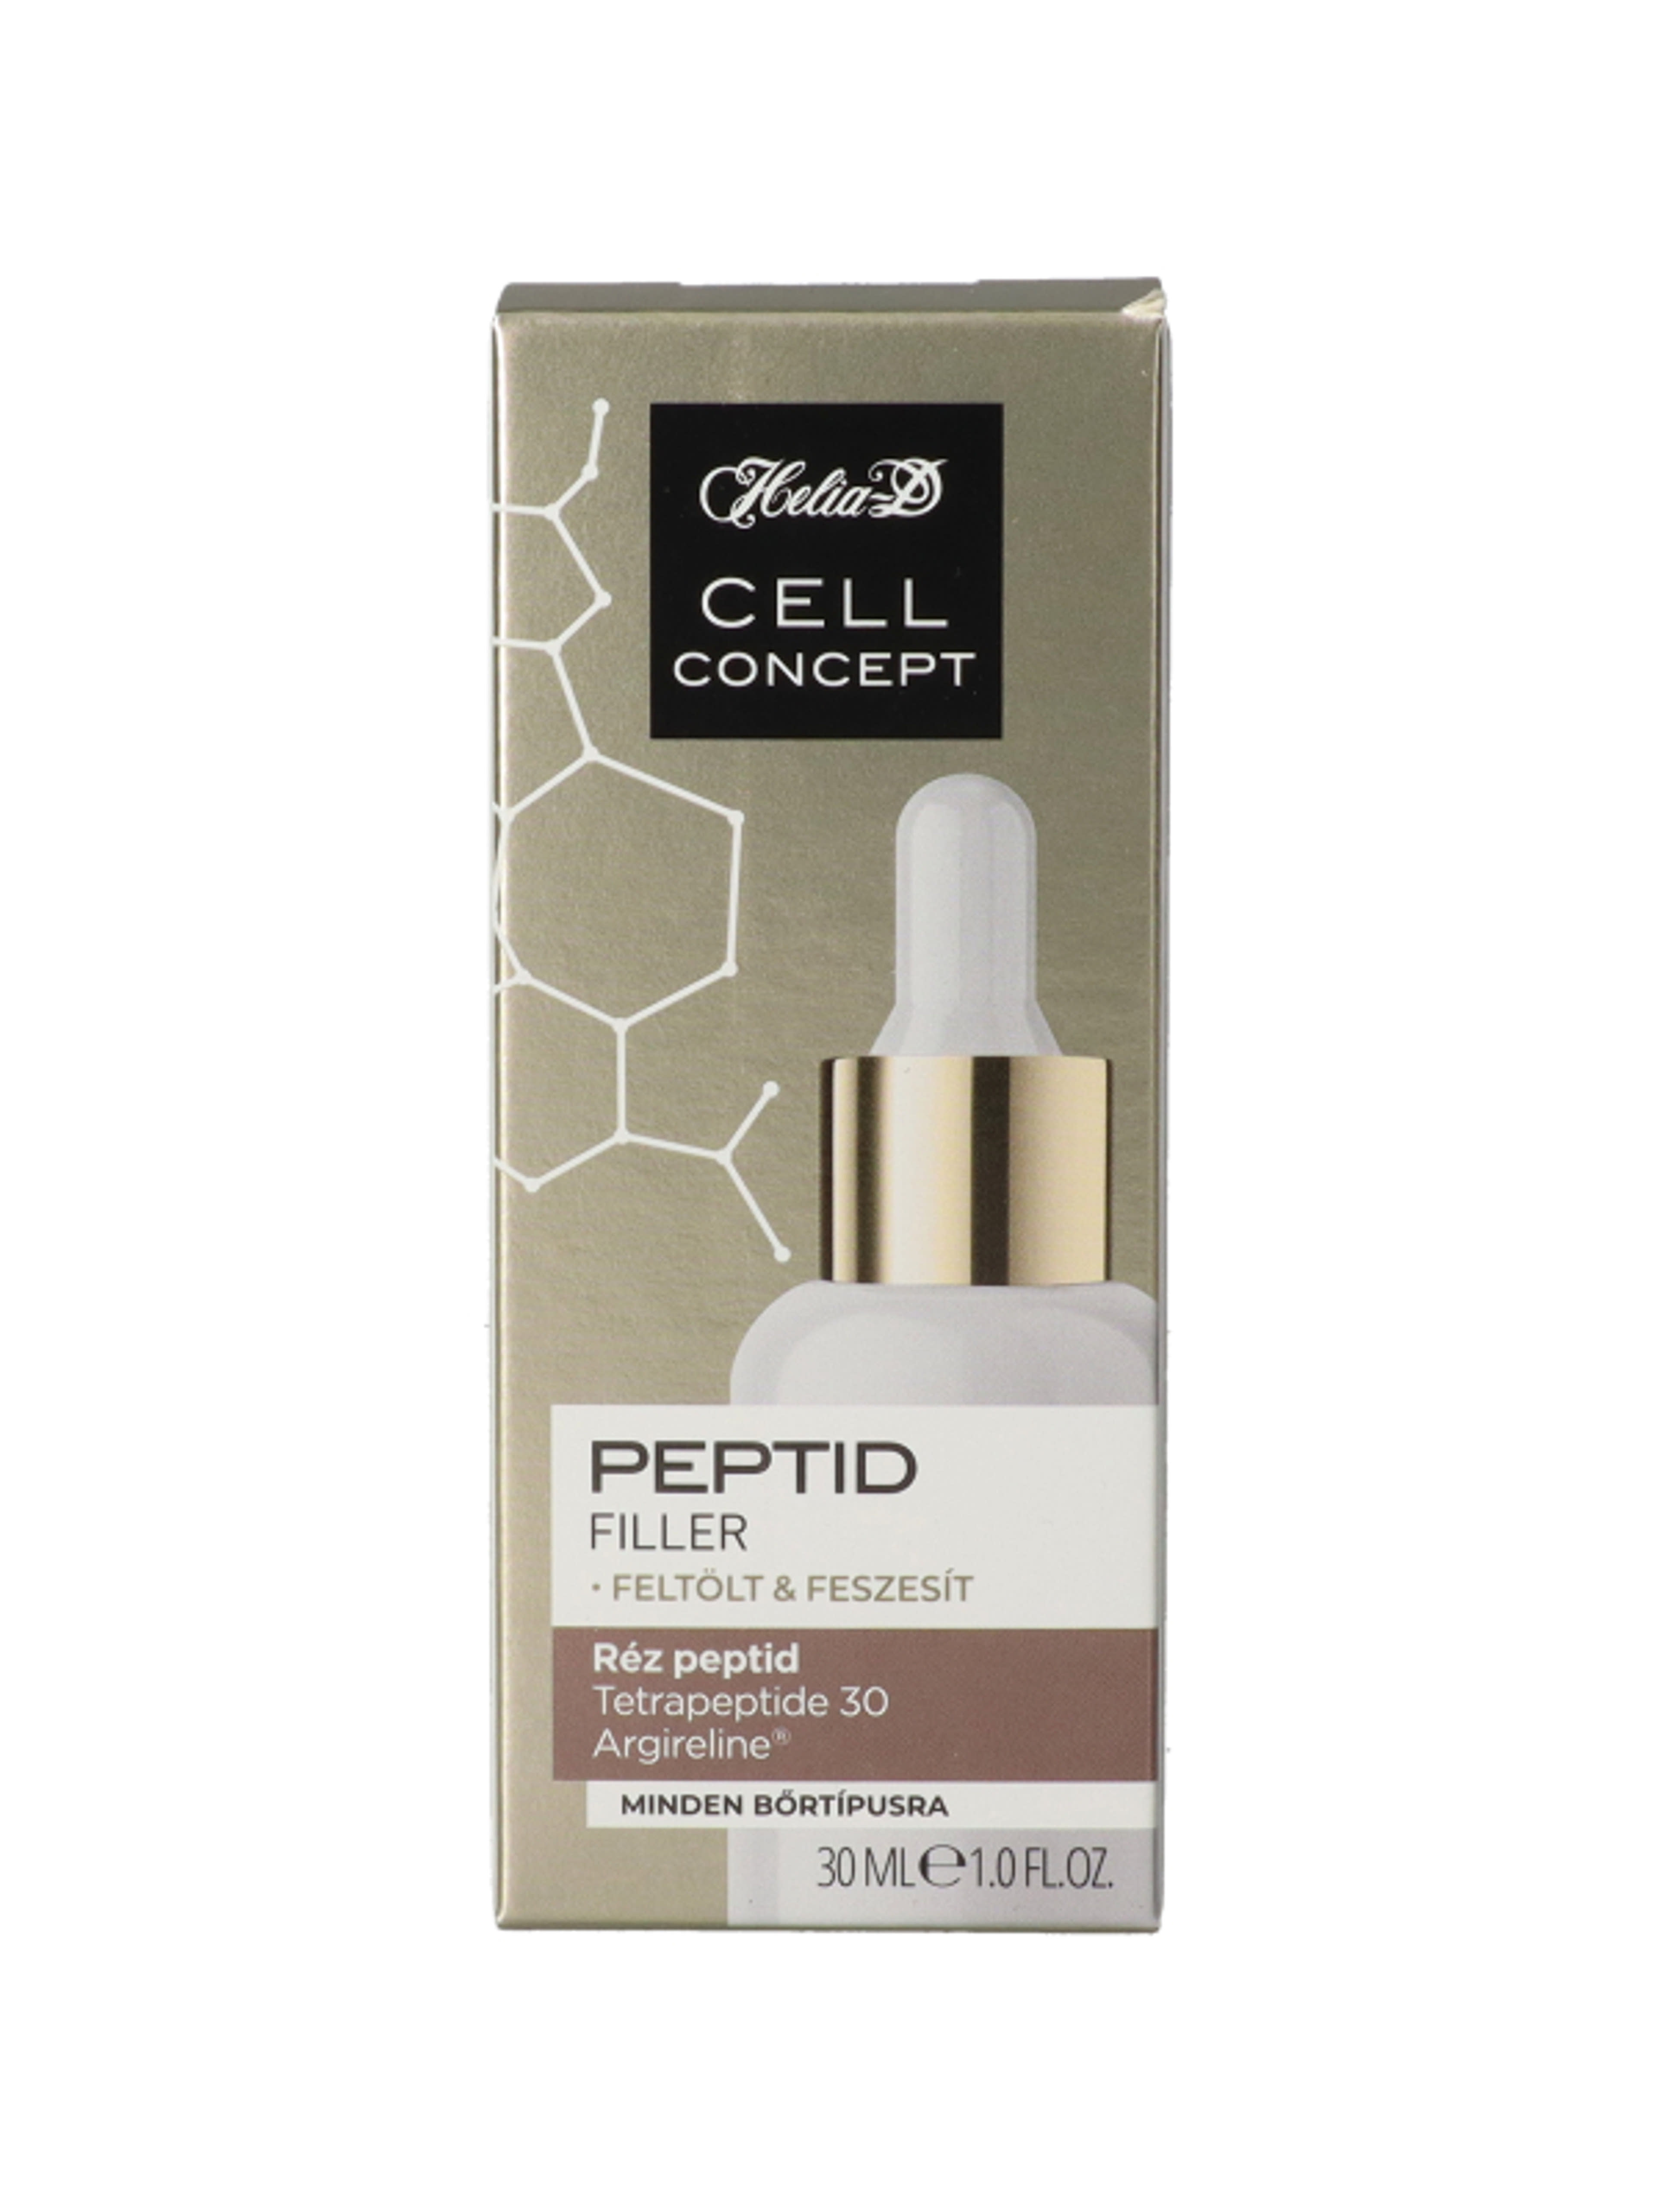 Helia-D Cell Concept Peptid szérum - 30 ml-2